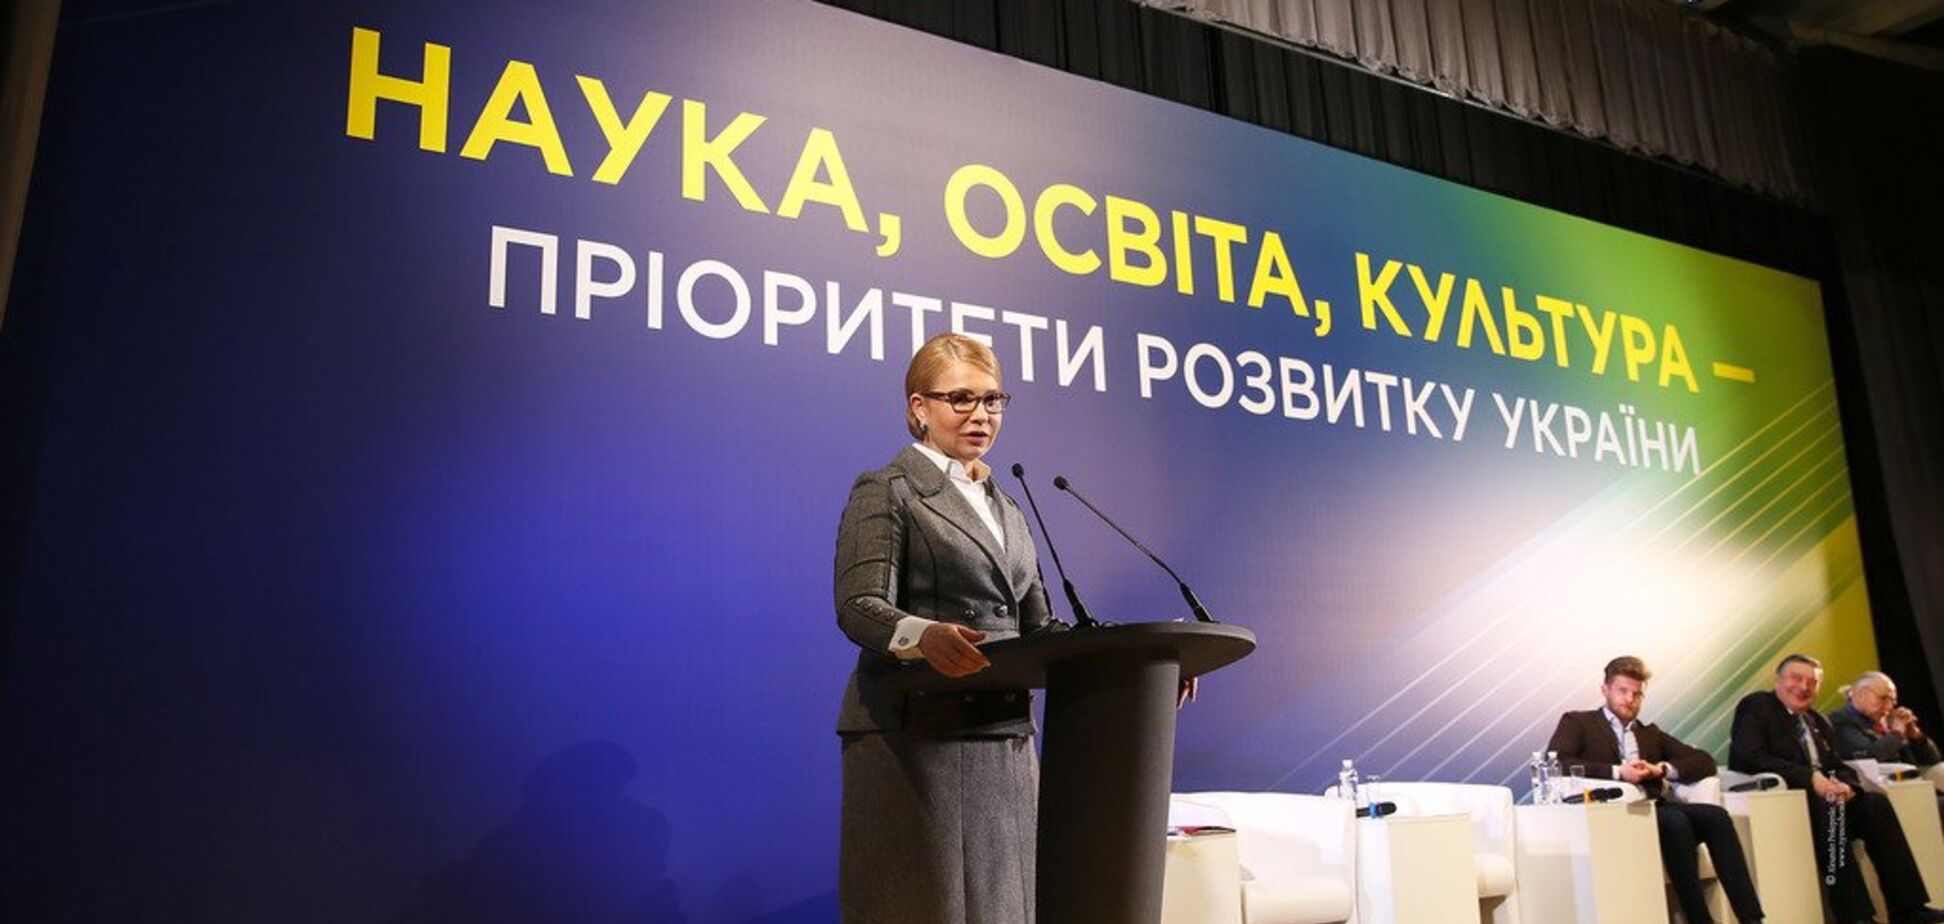 Тимошенко: наука та освіта забезпечать відродження України